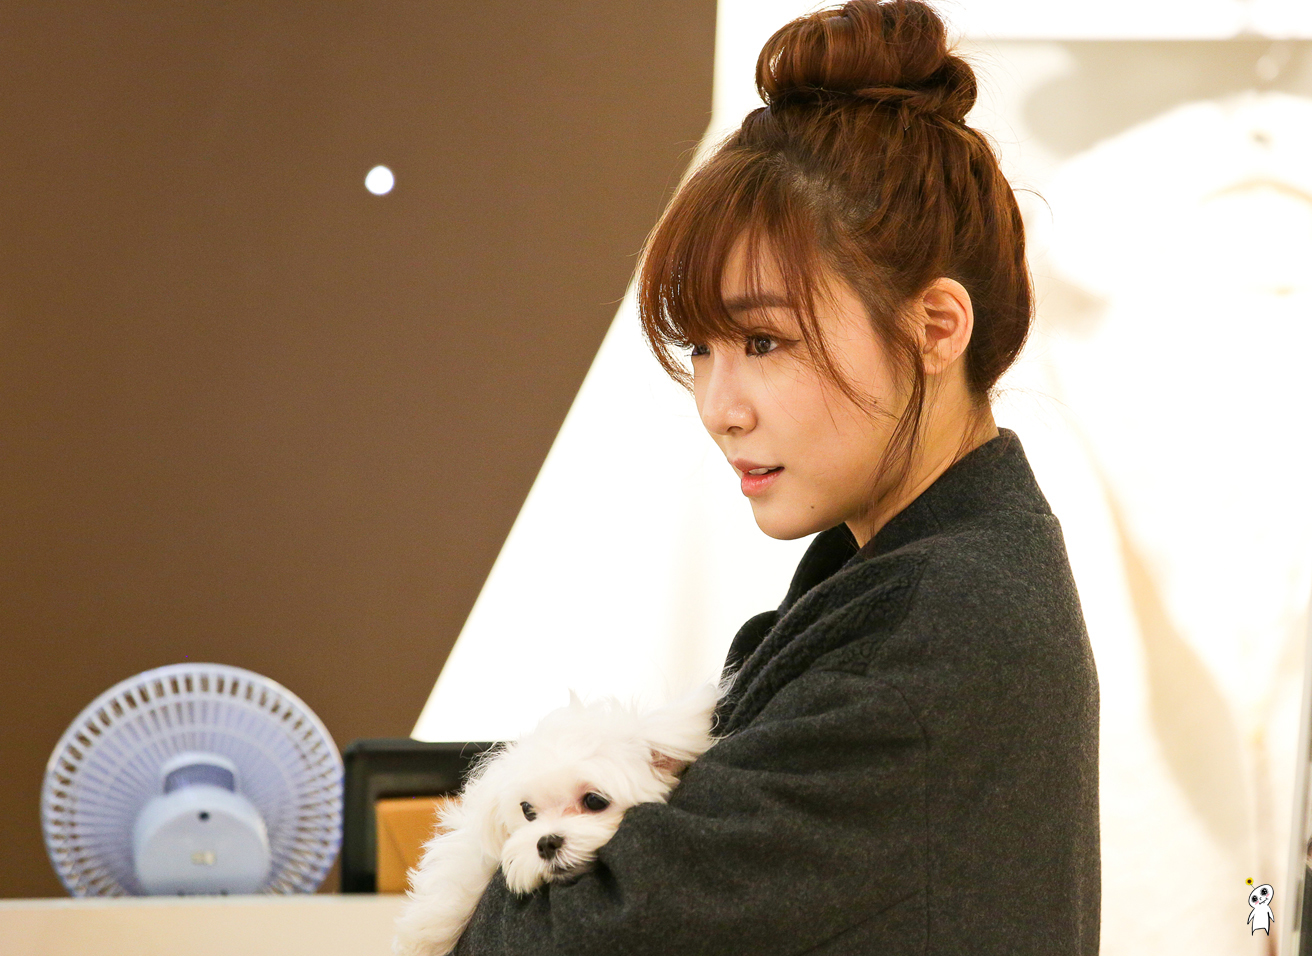 [PIC][28-11-2013]Tiffany ghé thăm cửa hàng "QUA" ở Hyundai Department Store vào trưa nay - Page 3 24161F4052980CB81D6923